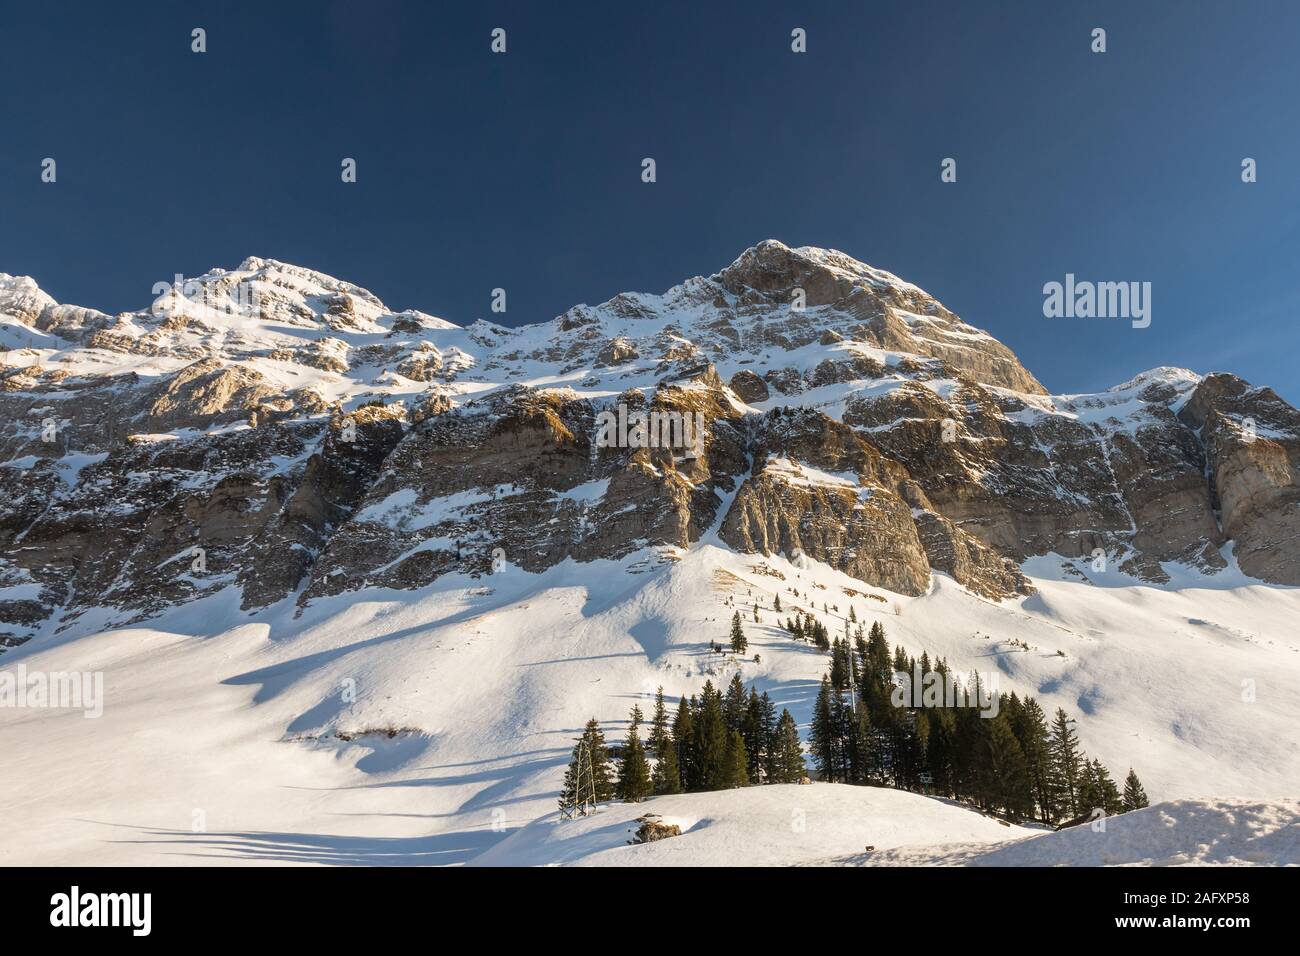 The Schwaegalp with view of Alpstein massif in winter, Canton of Appenzell Ausserrhoden, Switzerland Stock Photo